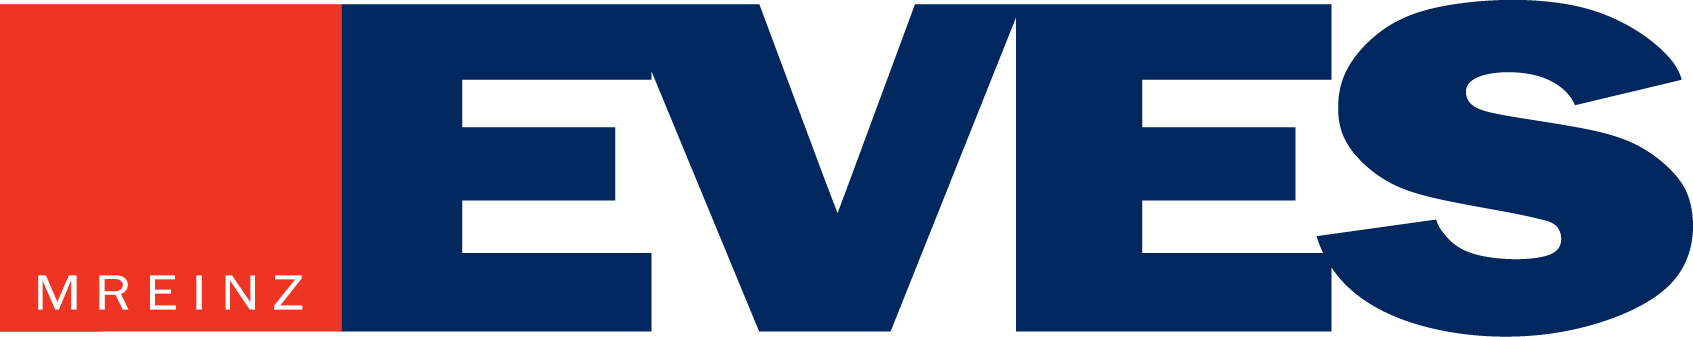 EVES Logo 2014